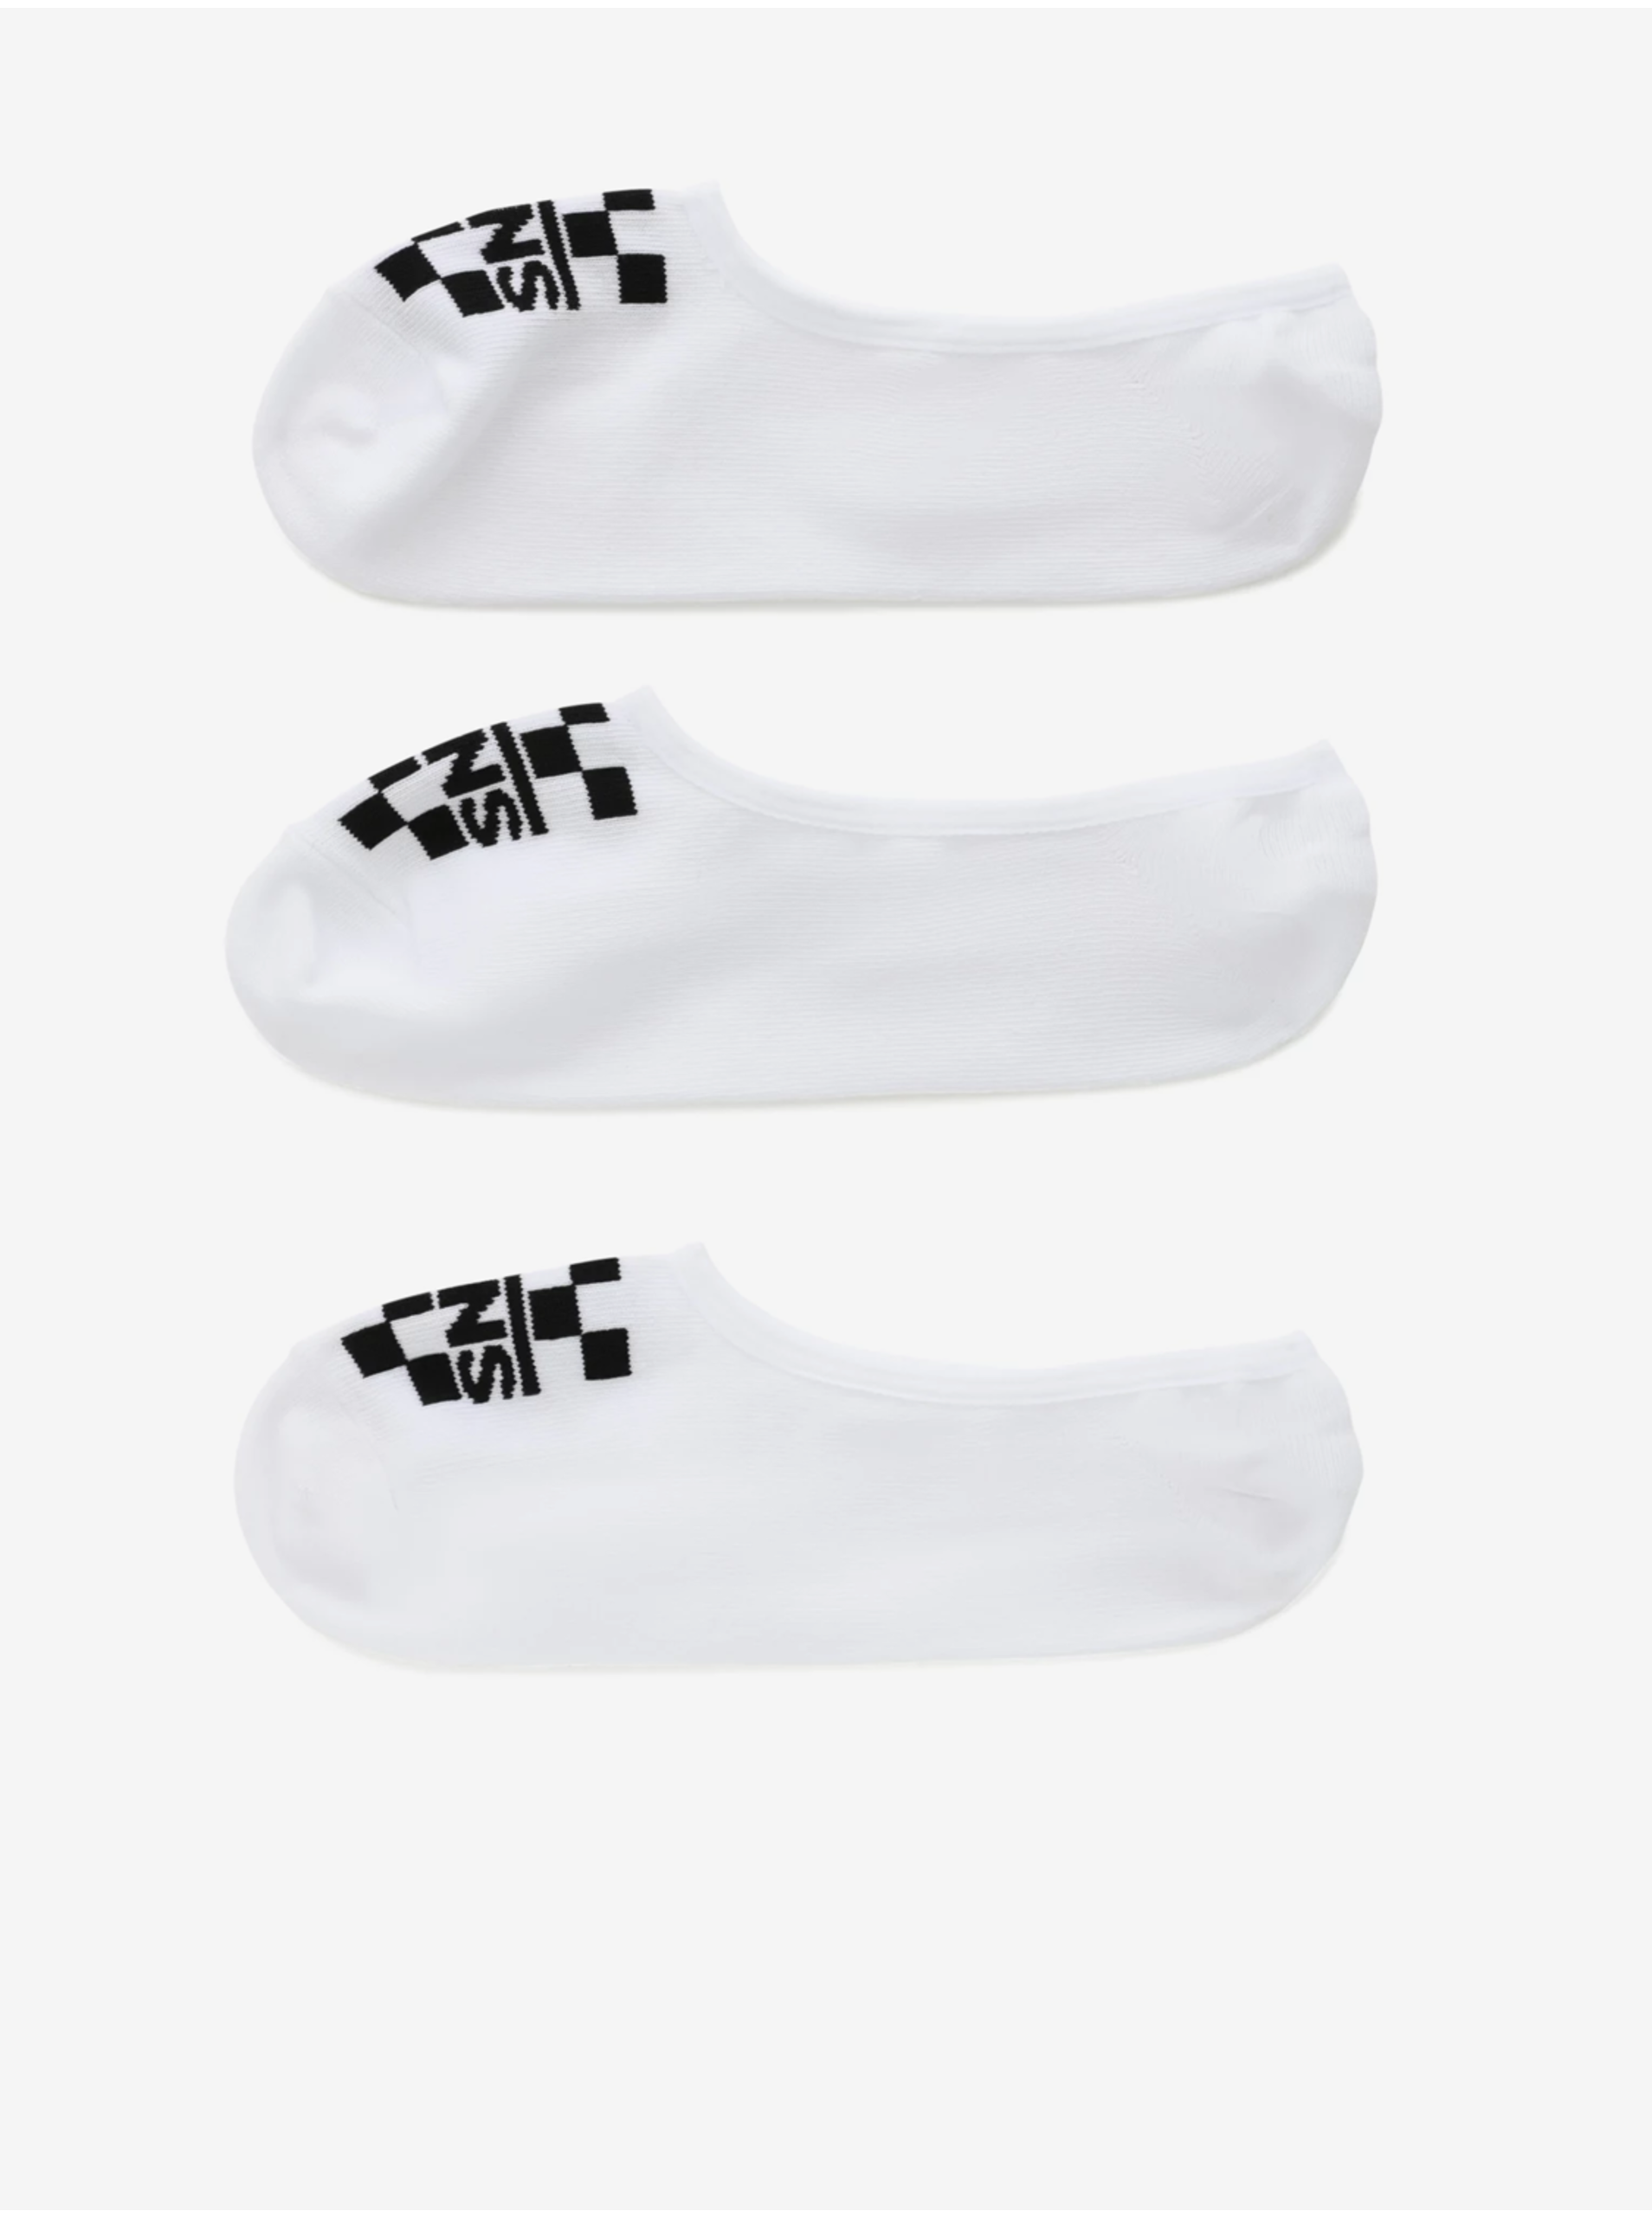 Set of three pairs of socks in white VANS - Men